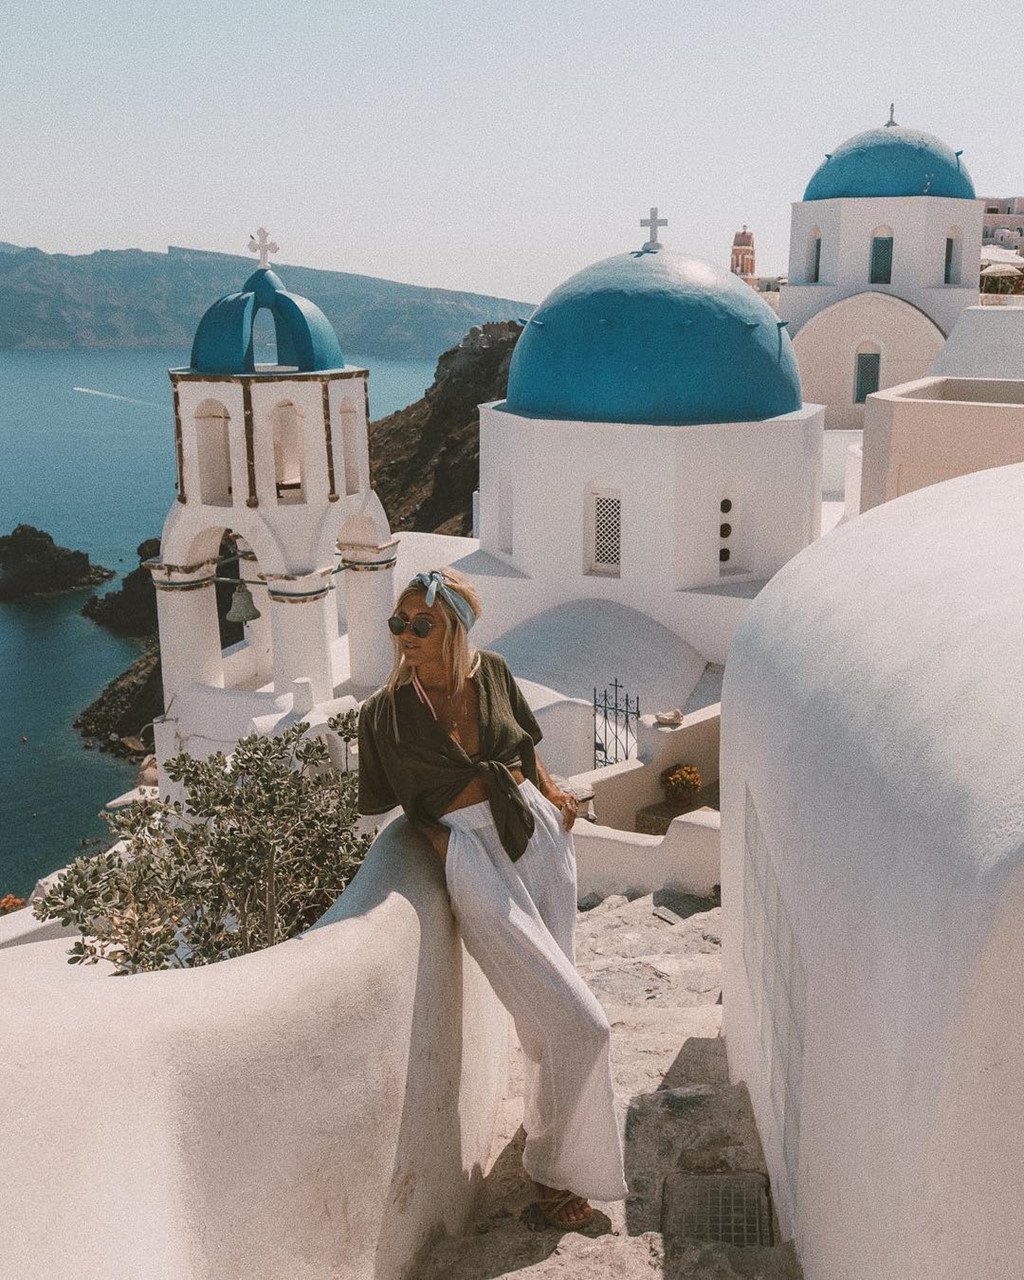 Đảo Santorini (Hy Lạp) với những tòa nhà hòa quyện giữa gam màu trắng tinh khôi và xanh coban quyến rũ là một trong những hòn đảo hút khách nhất châu Âu và cũng là điểm check-in quen thuộc trên Instagram. Tại sao những người có ảnh hưởng tới cộng đồng du lịch cùng đổ xô tới các địa điểm giống nhau và chụp những tấm hình tương tự? Ảnh: Instagram/gypsea_lust.